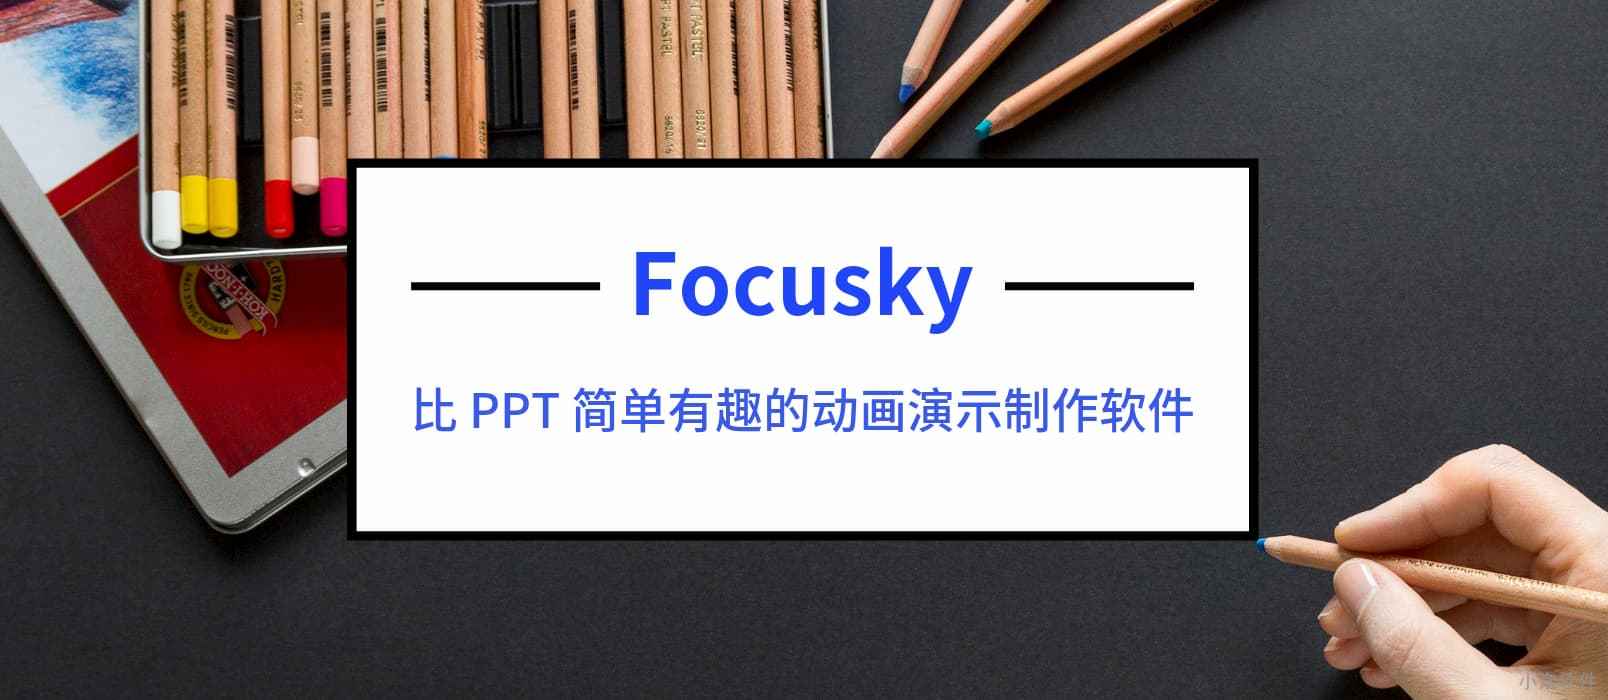 制作炫酷动画 PPT 的软件 – Focusky 送3000个 特别版激活码